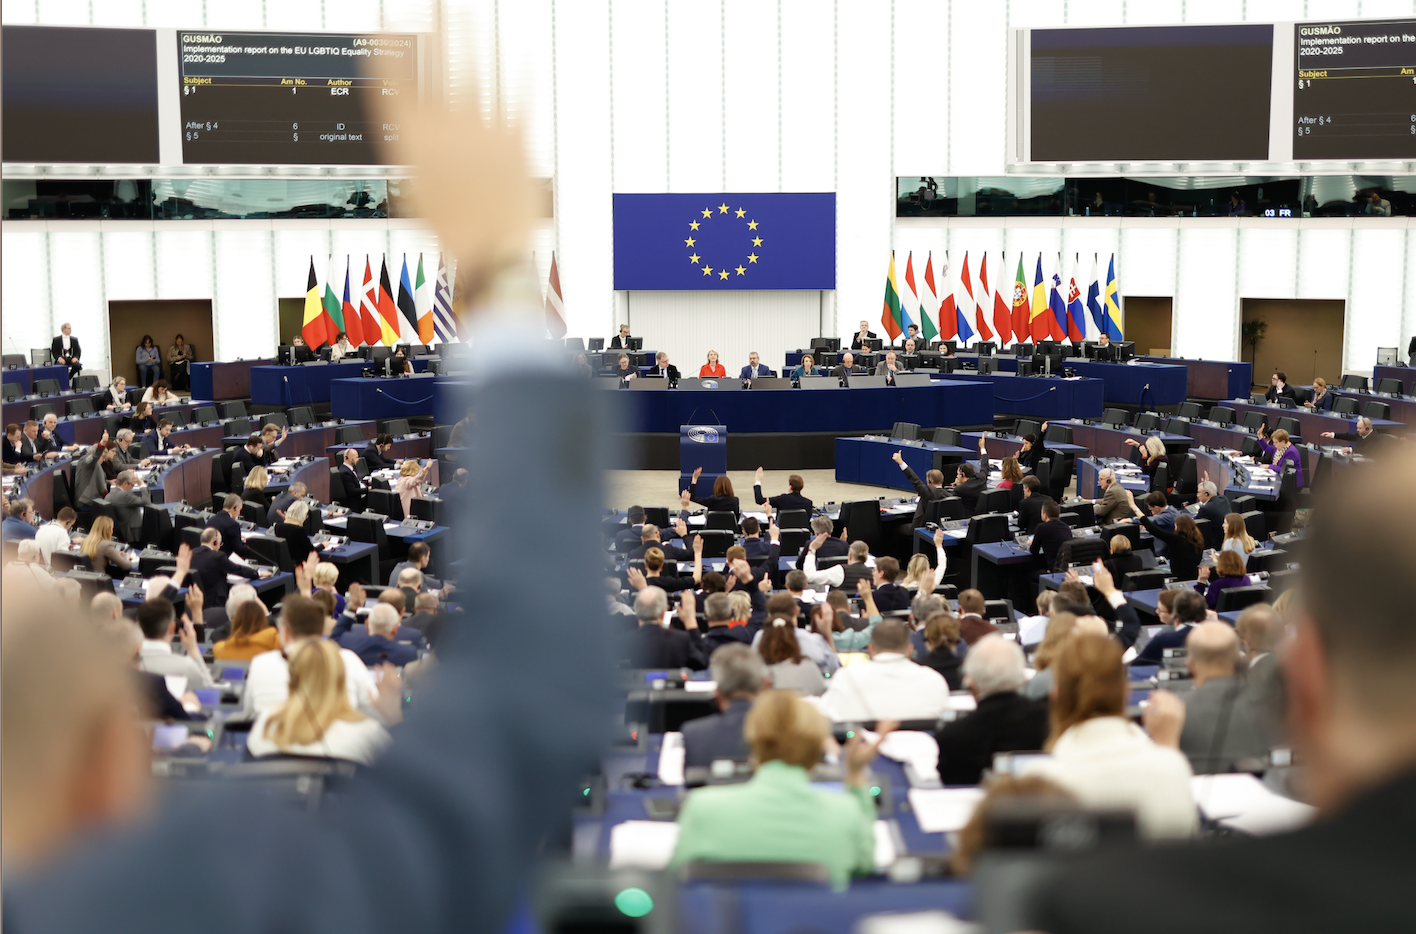 Přečtete si více ze článku Shrnutí: 5 hlavních bodů plenárního zasedání Evropského parlamentu